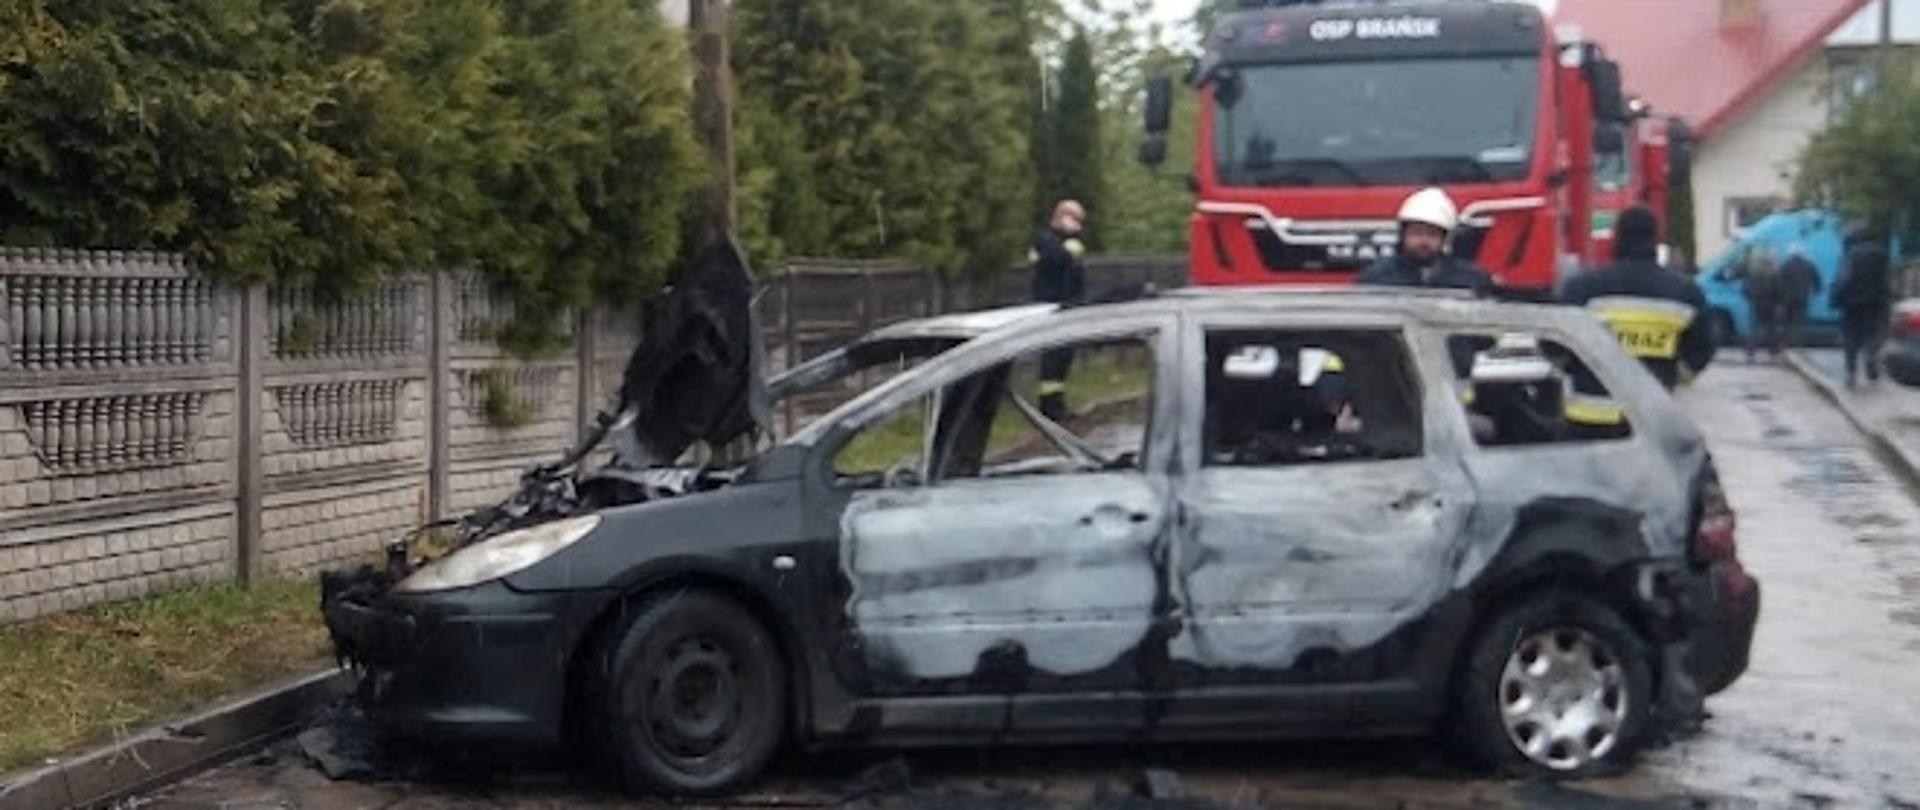 Samochód osobowy marki Peugeot po pożarze. Opalony lakier na całej powierzchni auta. W tle samochód ratowniczo-gaśniczy.